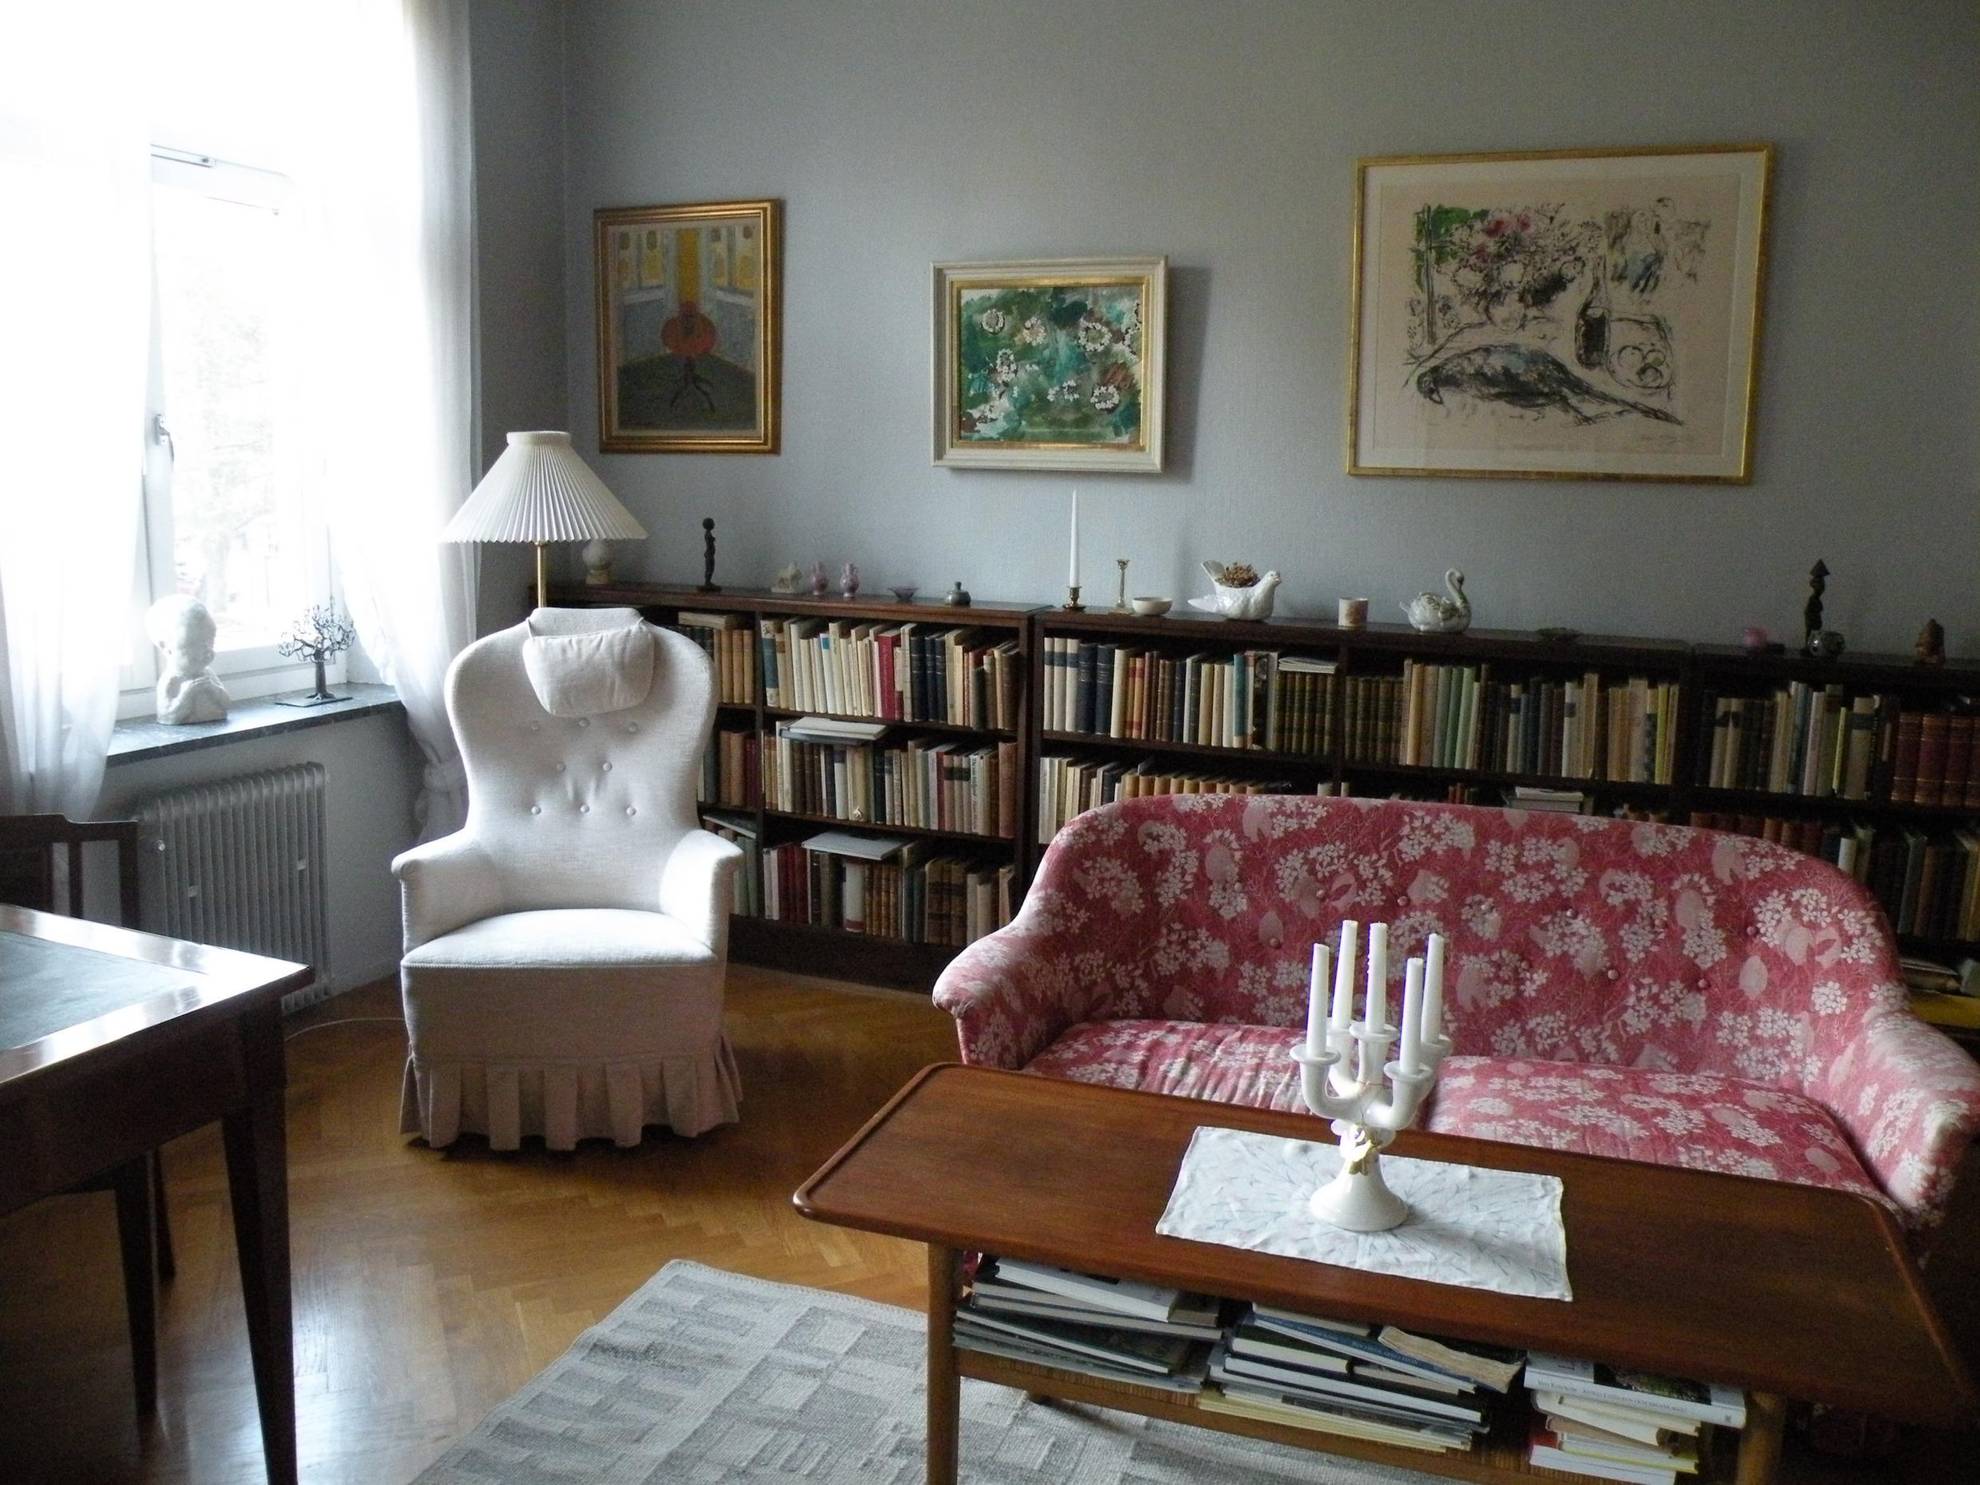 Le salon d'Astrid Lindgren, avec une chaise pour lire, une grande bibliothèque sur laquelle sont posés des bibelots, un canapé rouge à motifs et quelques peintures au mur.